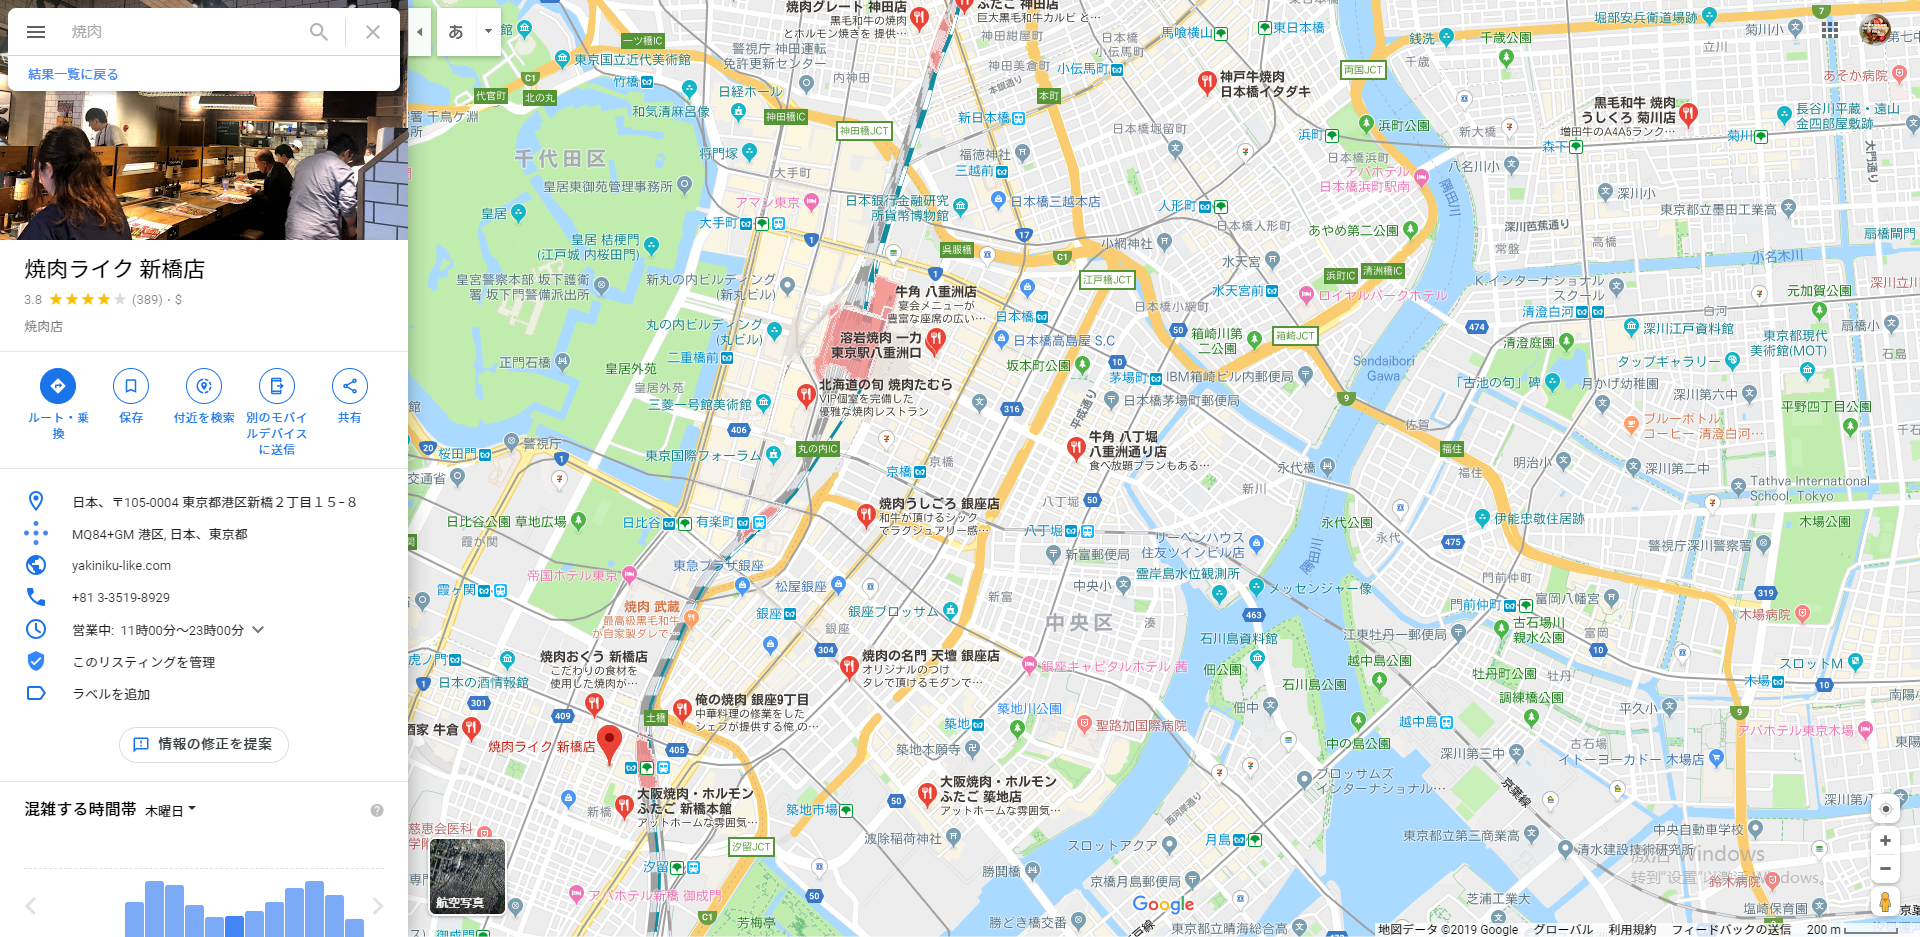 22-Googleマップ.png